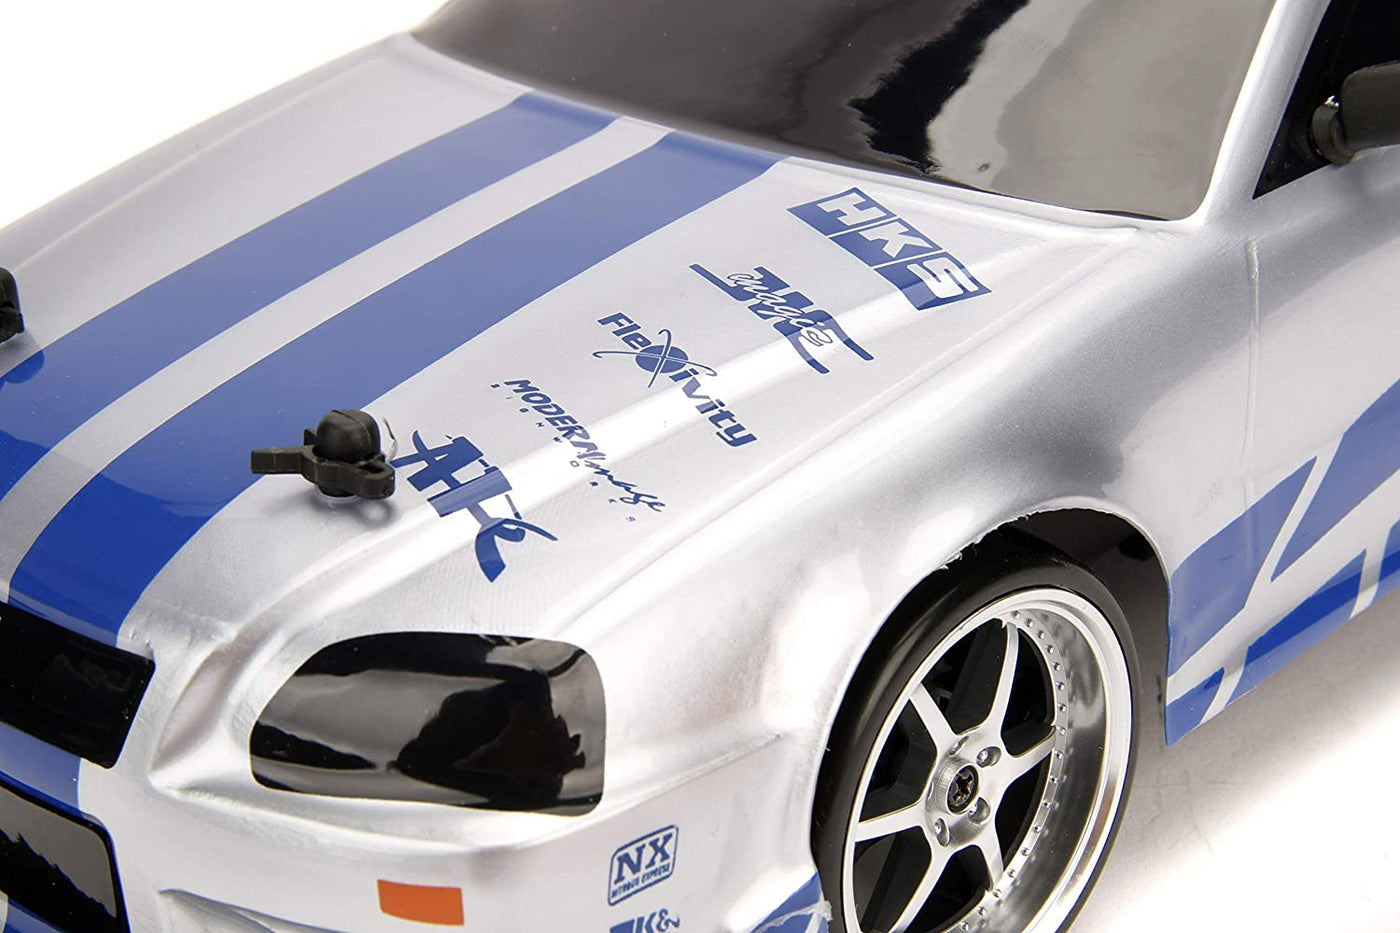 Fast & Furious Brian's Nissan Skyline GT-R (BNR34) (1: 10 Scale) | Jada Toys